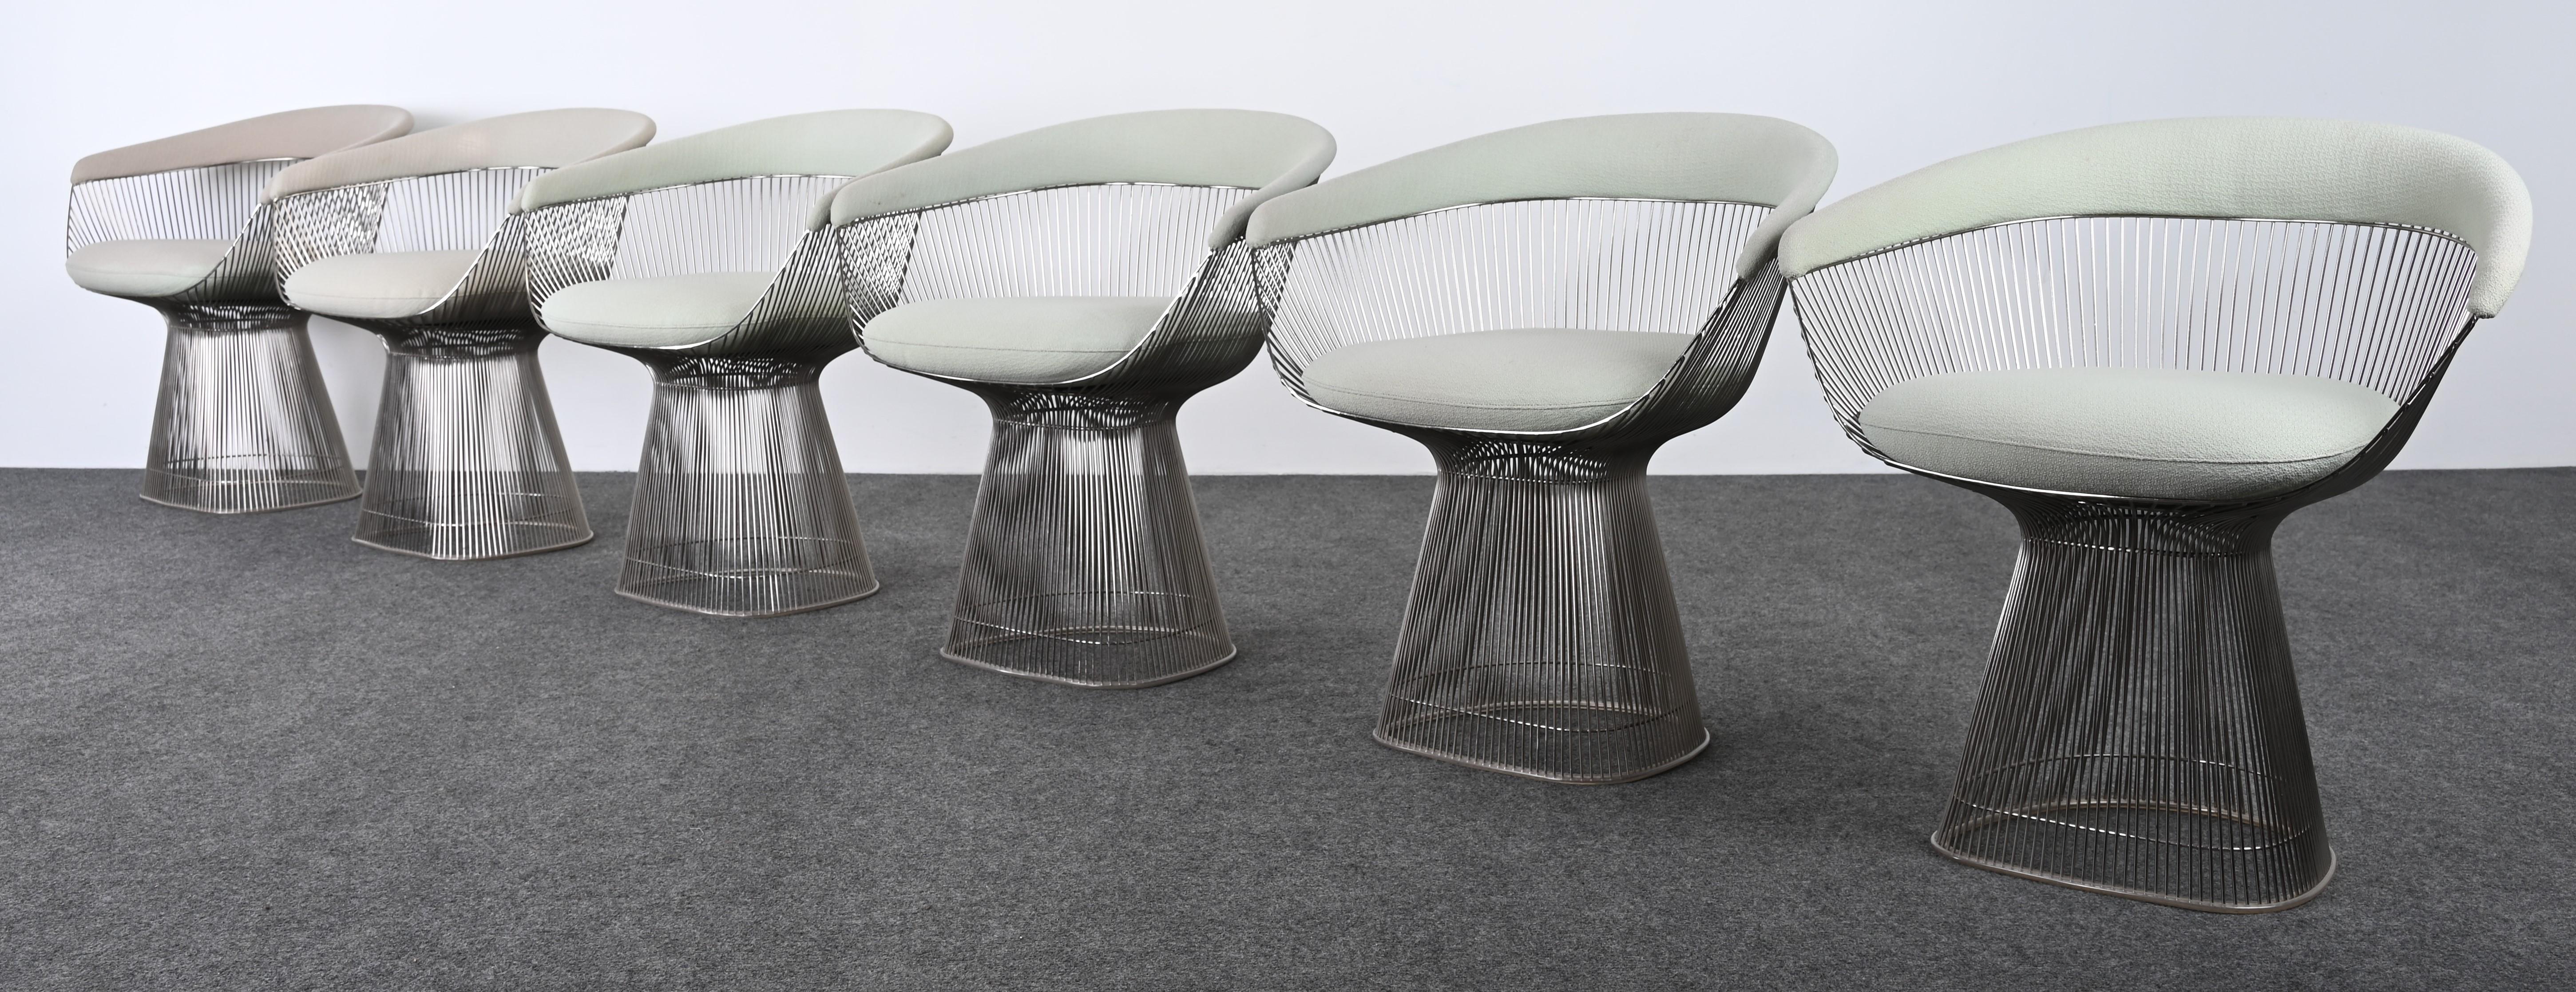 Ein exquisiter Satz von sechs Esszimmerstühlen, entworfen von Warren Platner für Knoll. Diese kultigen Esszimmerstühle passen zu jeder Einrichtung im zeitgenössischen, im Übergangsstil oder im traditionellen Stil. Dieses Set hat ein zeitloses